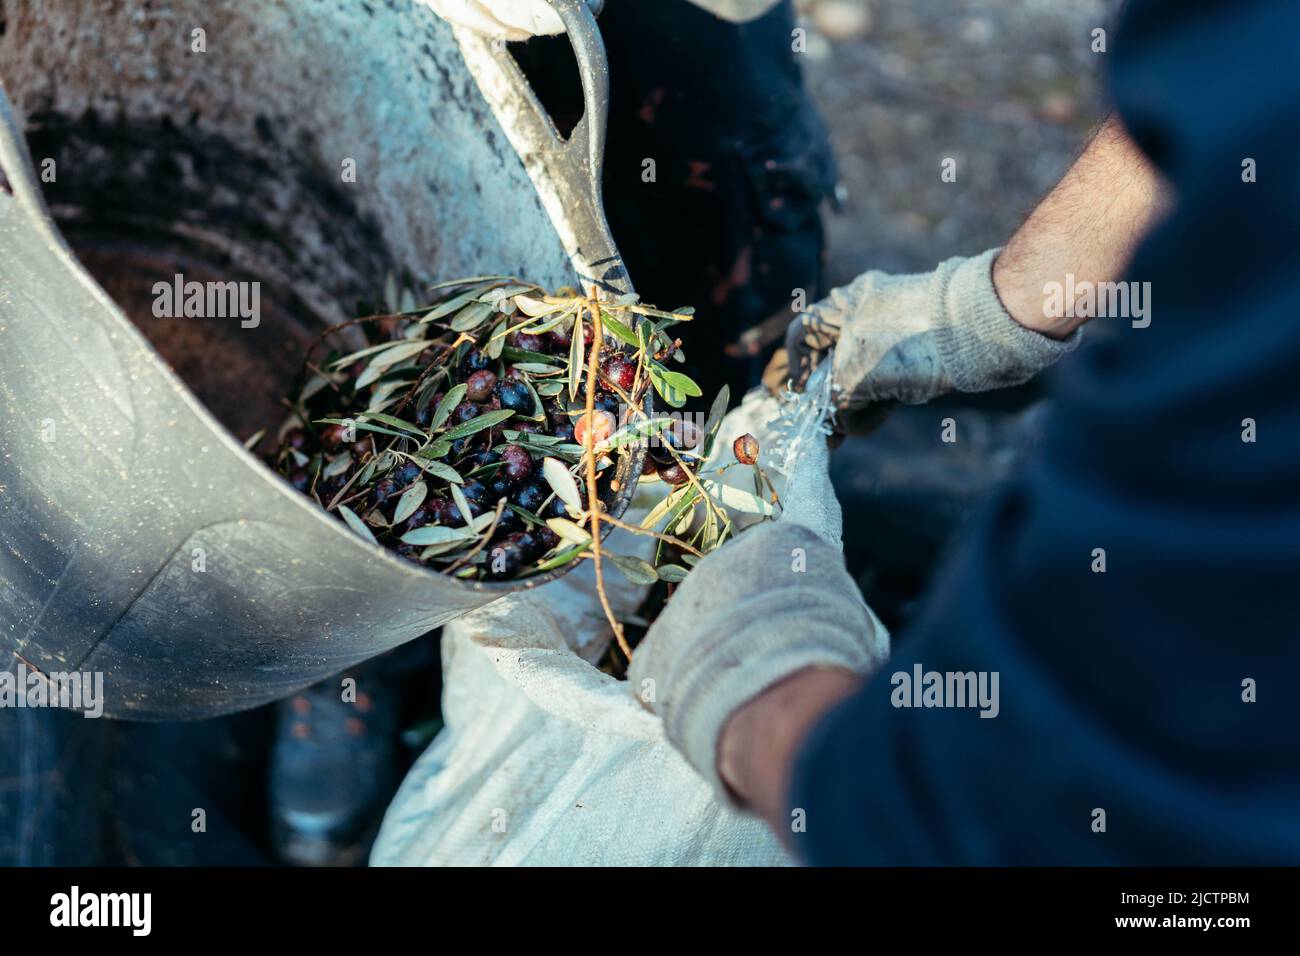 Ein Arbeiter leert mit Hilfe eines Mitarbeiters einen Korb mit Oliven Stockfoto